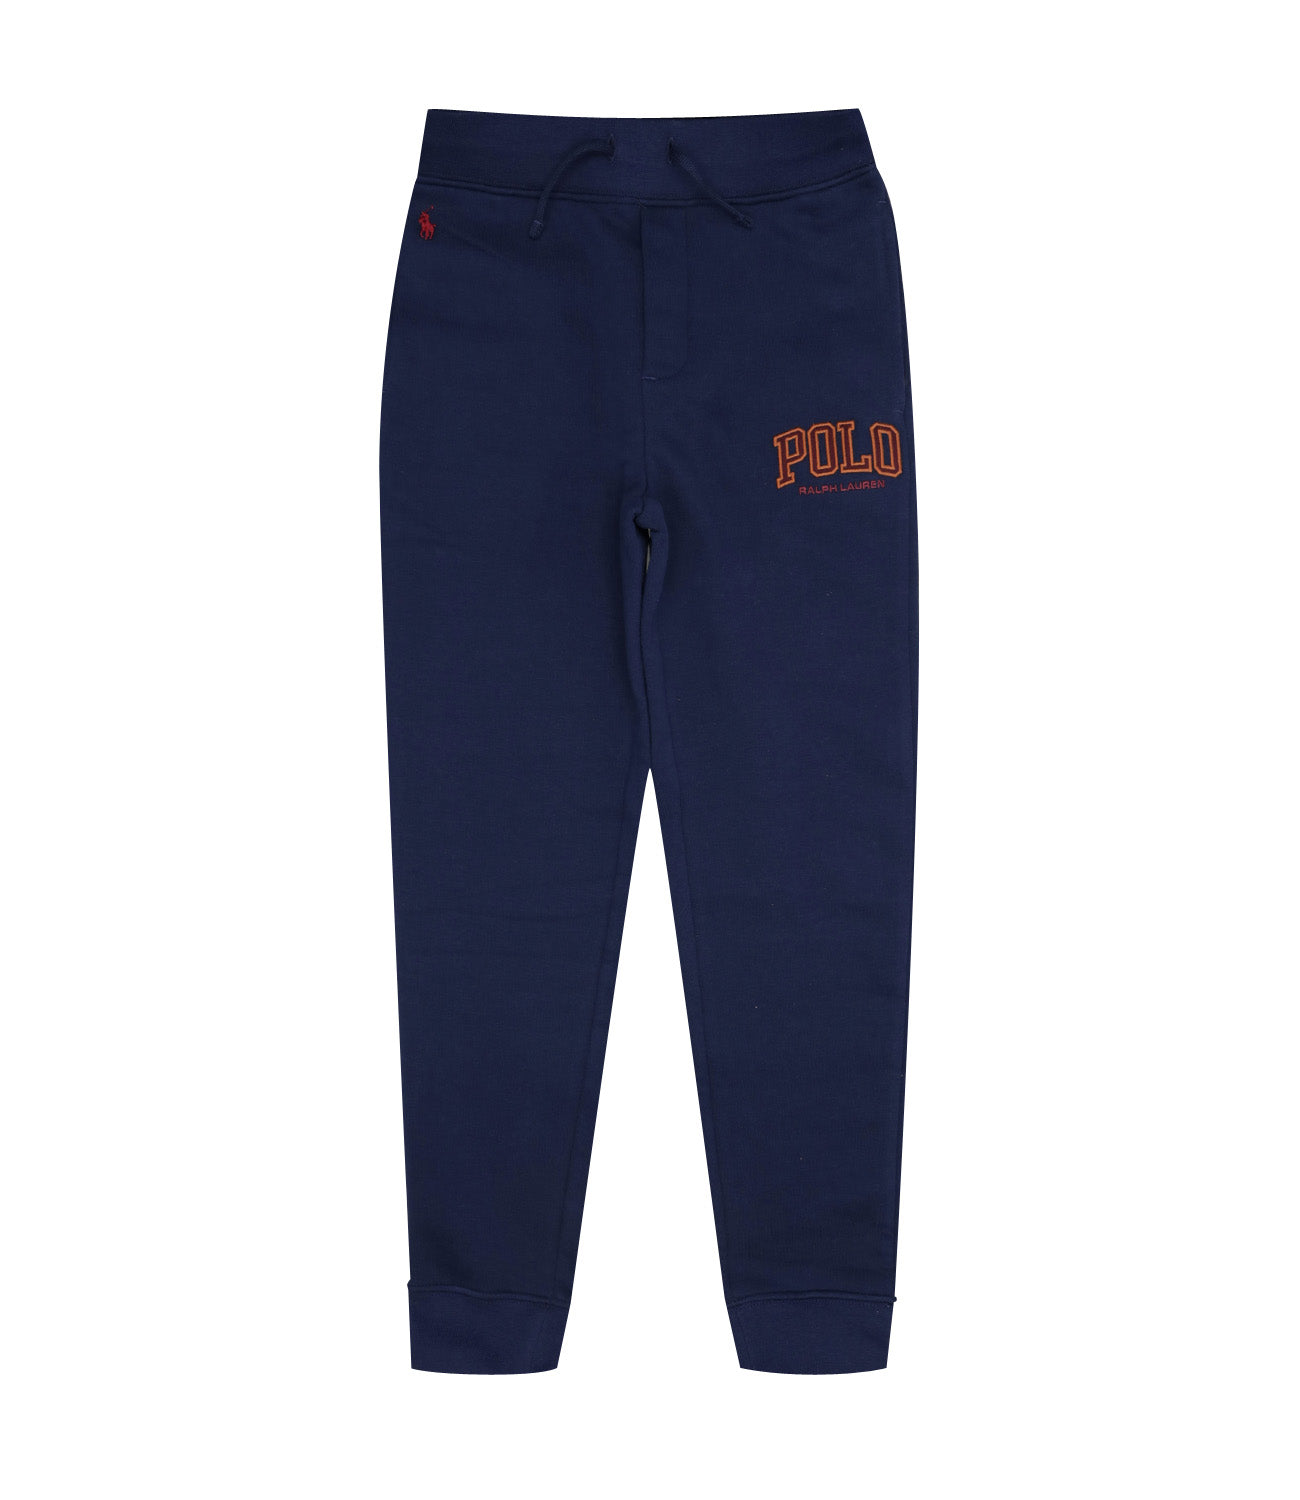 Ralph Lauren Childrenswear | Blue and Bordeaux Sports Pants